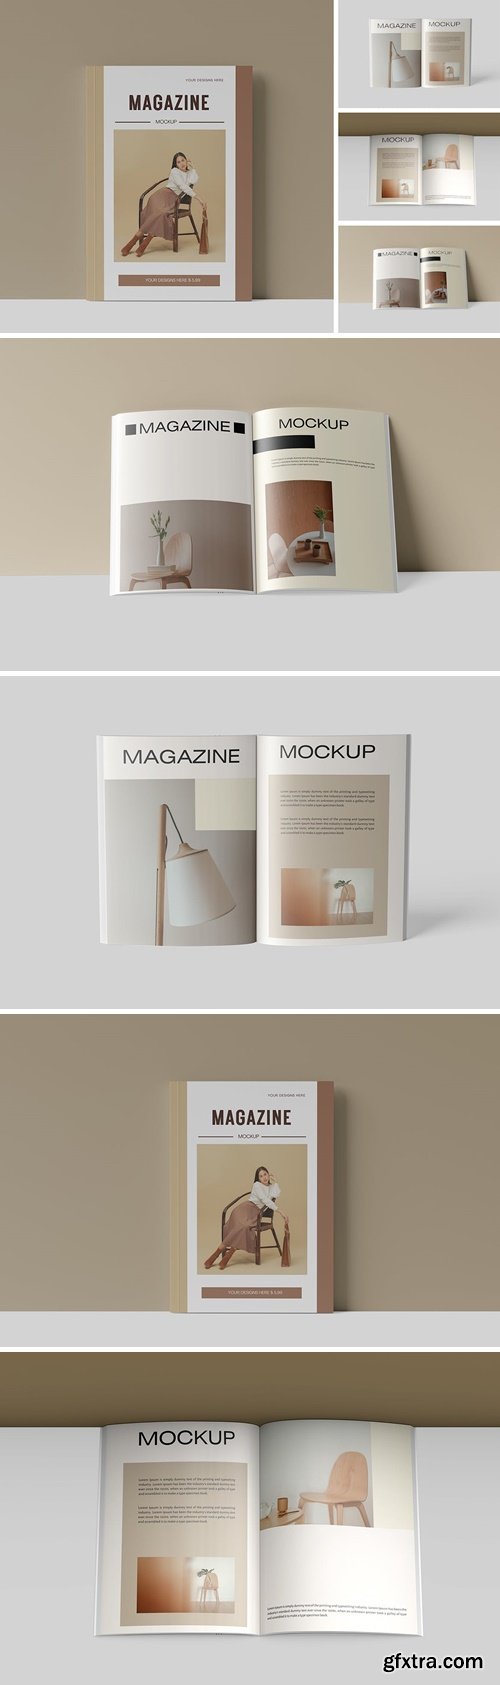 Magazine Mockup 3X9YNHK